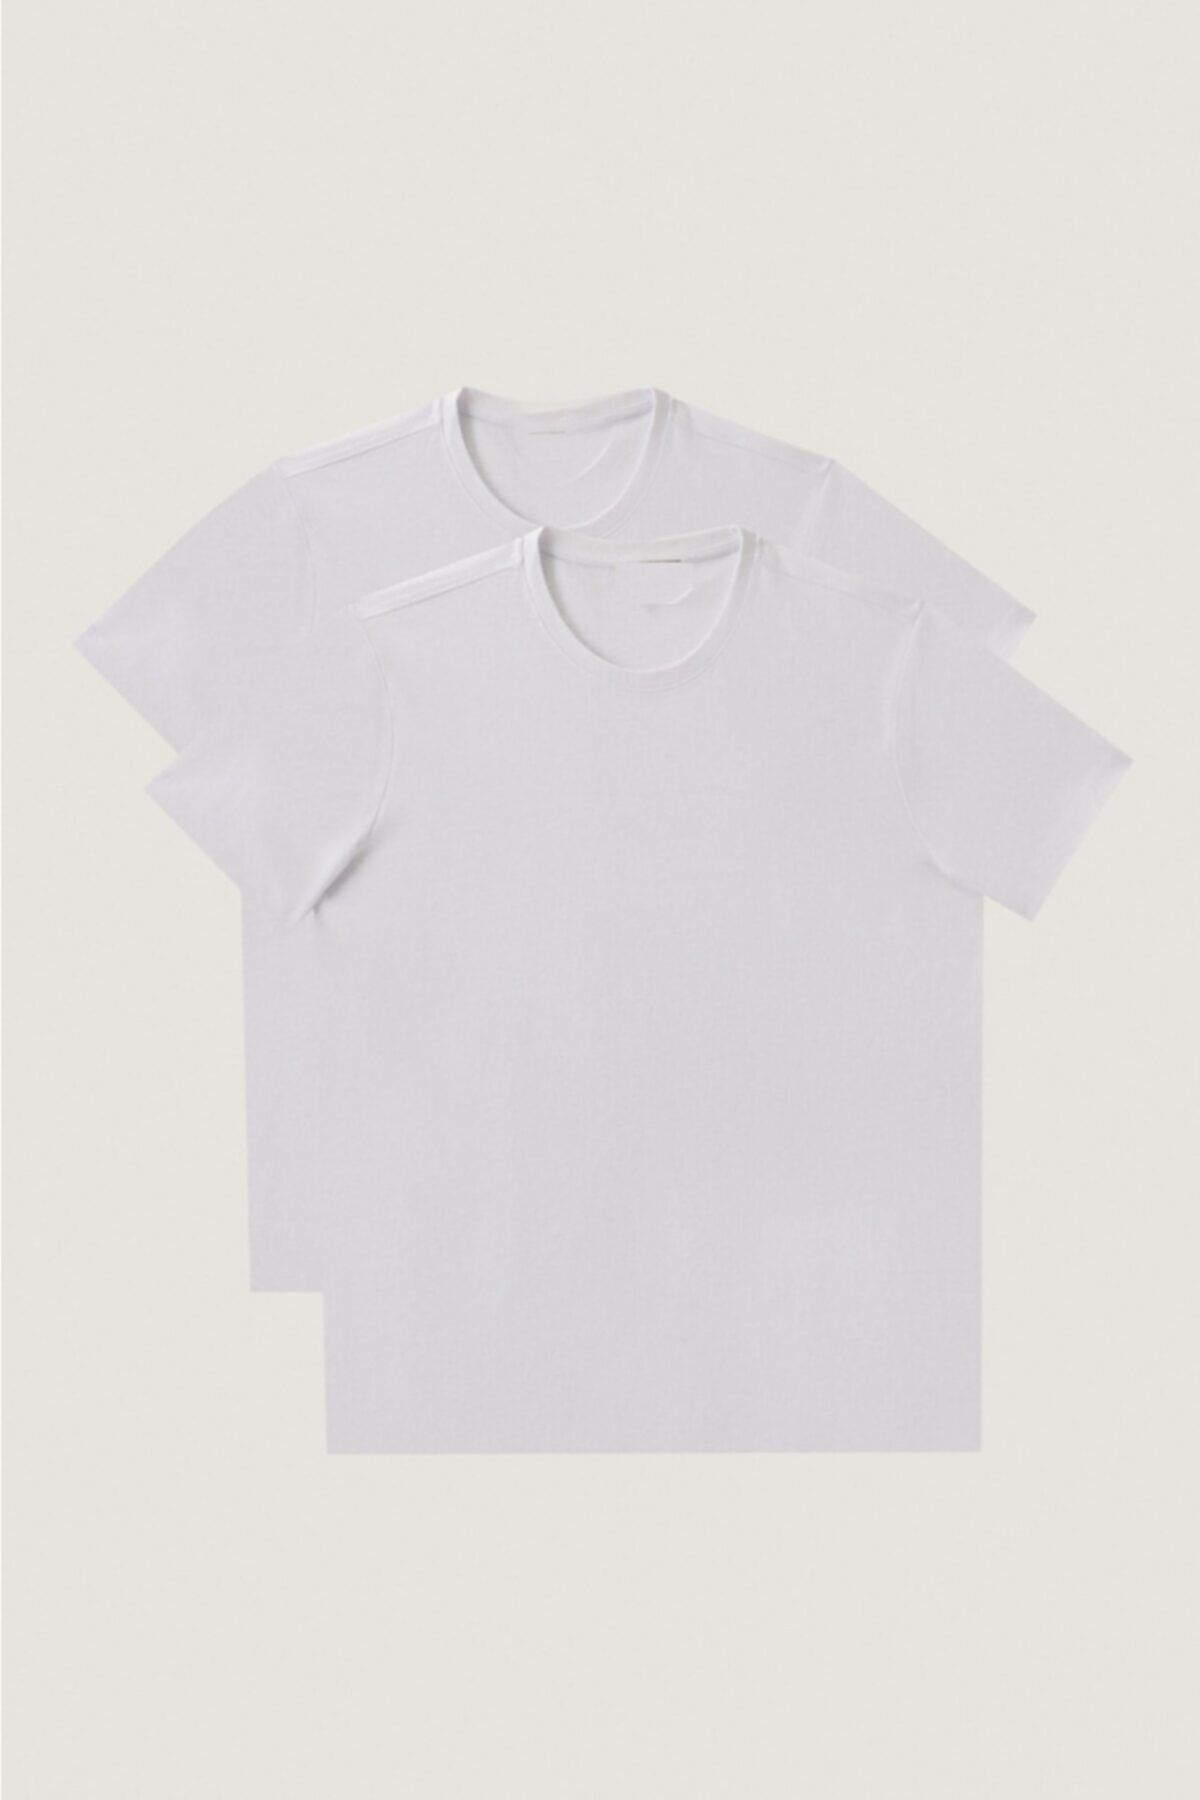 MODAÖYKÜM Unisex Regular Kalıp Beyaz T-shirt Iki Beyaz